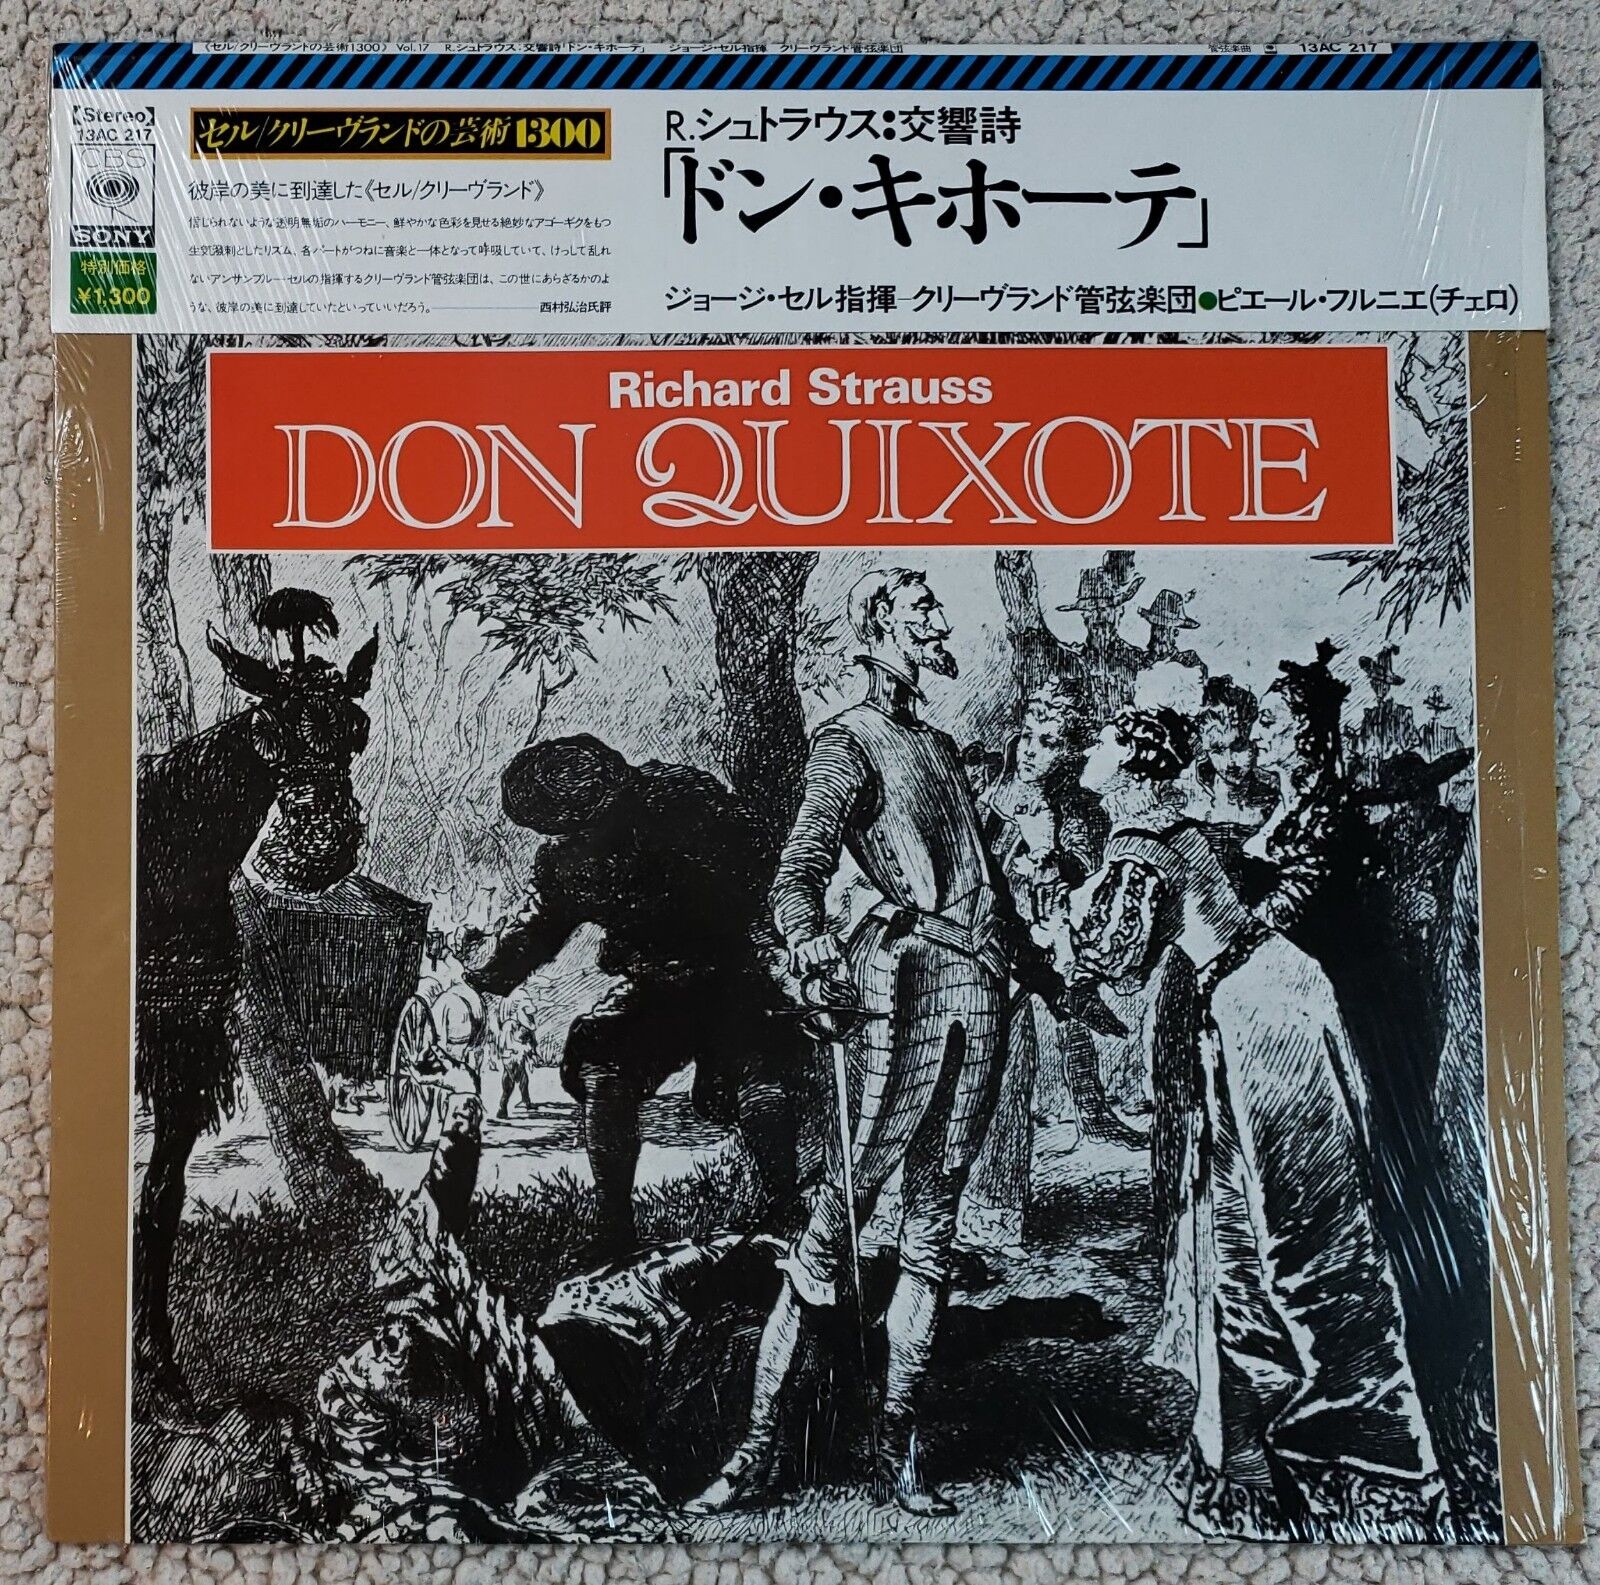 R. Strauss: Don Quixote/Szell & Pierre Fournier CBS Sony 13AC 217 Japan NM